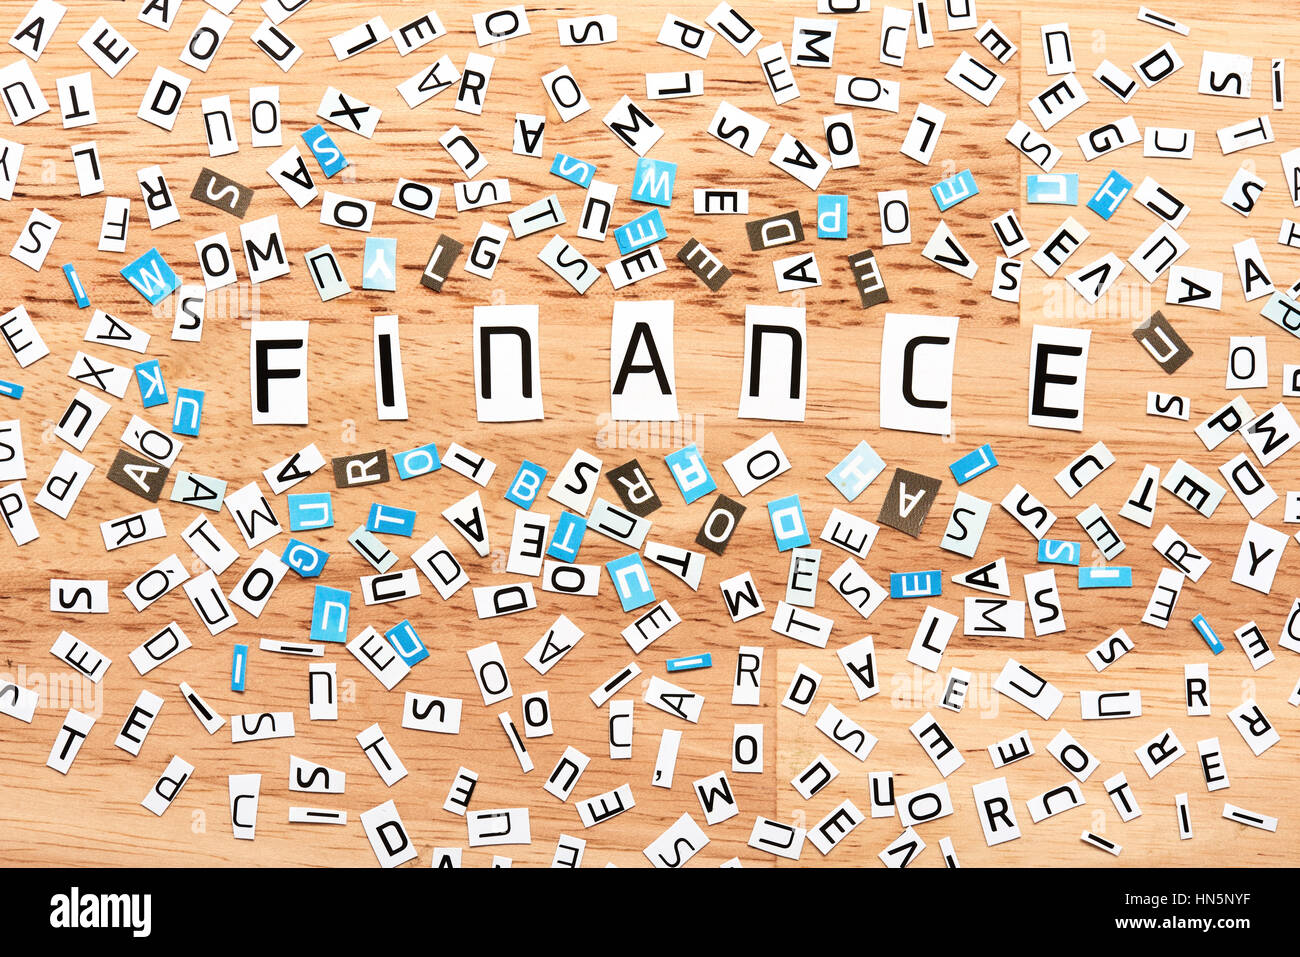 Finanzen-Wort aus Buchstaben auf Holztisch ausgeschnitten Stockfoto